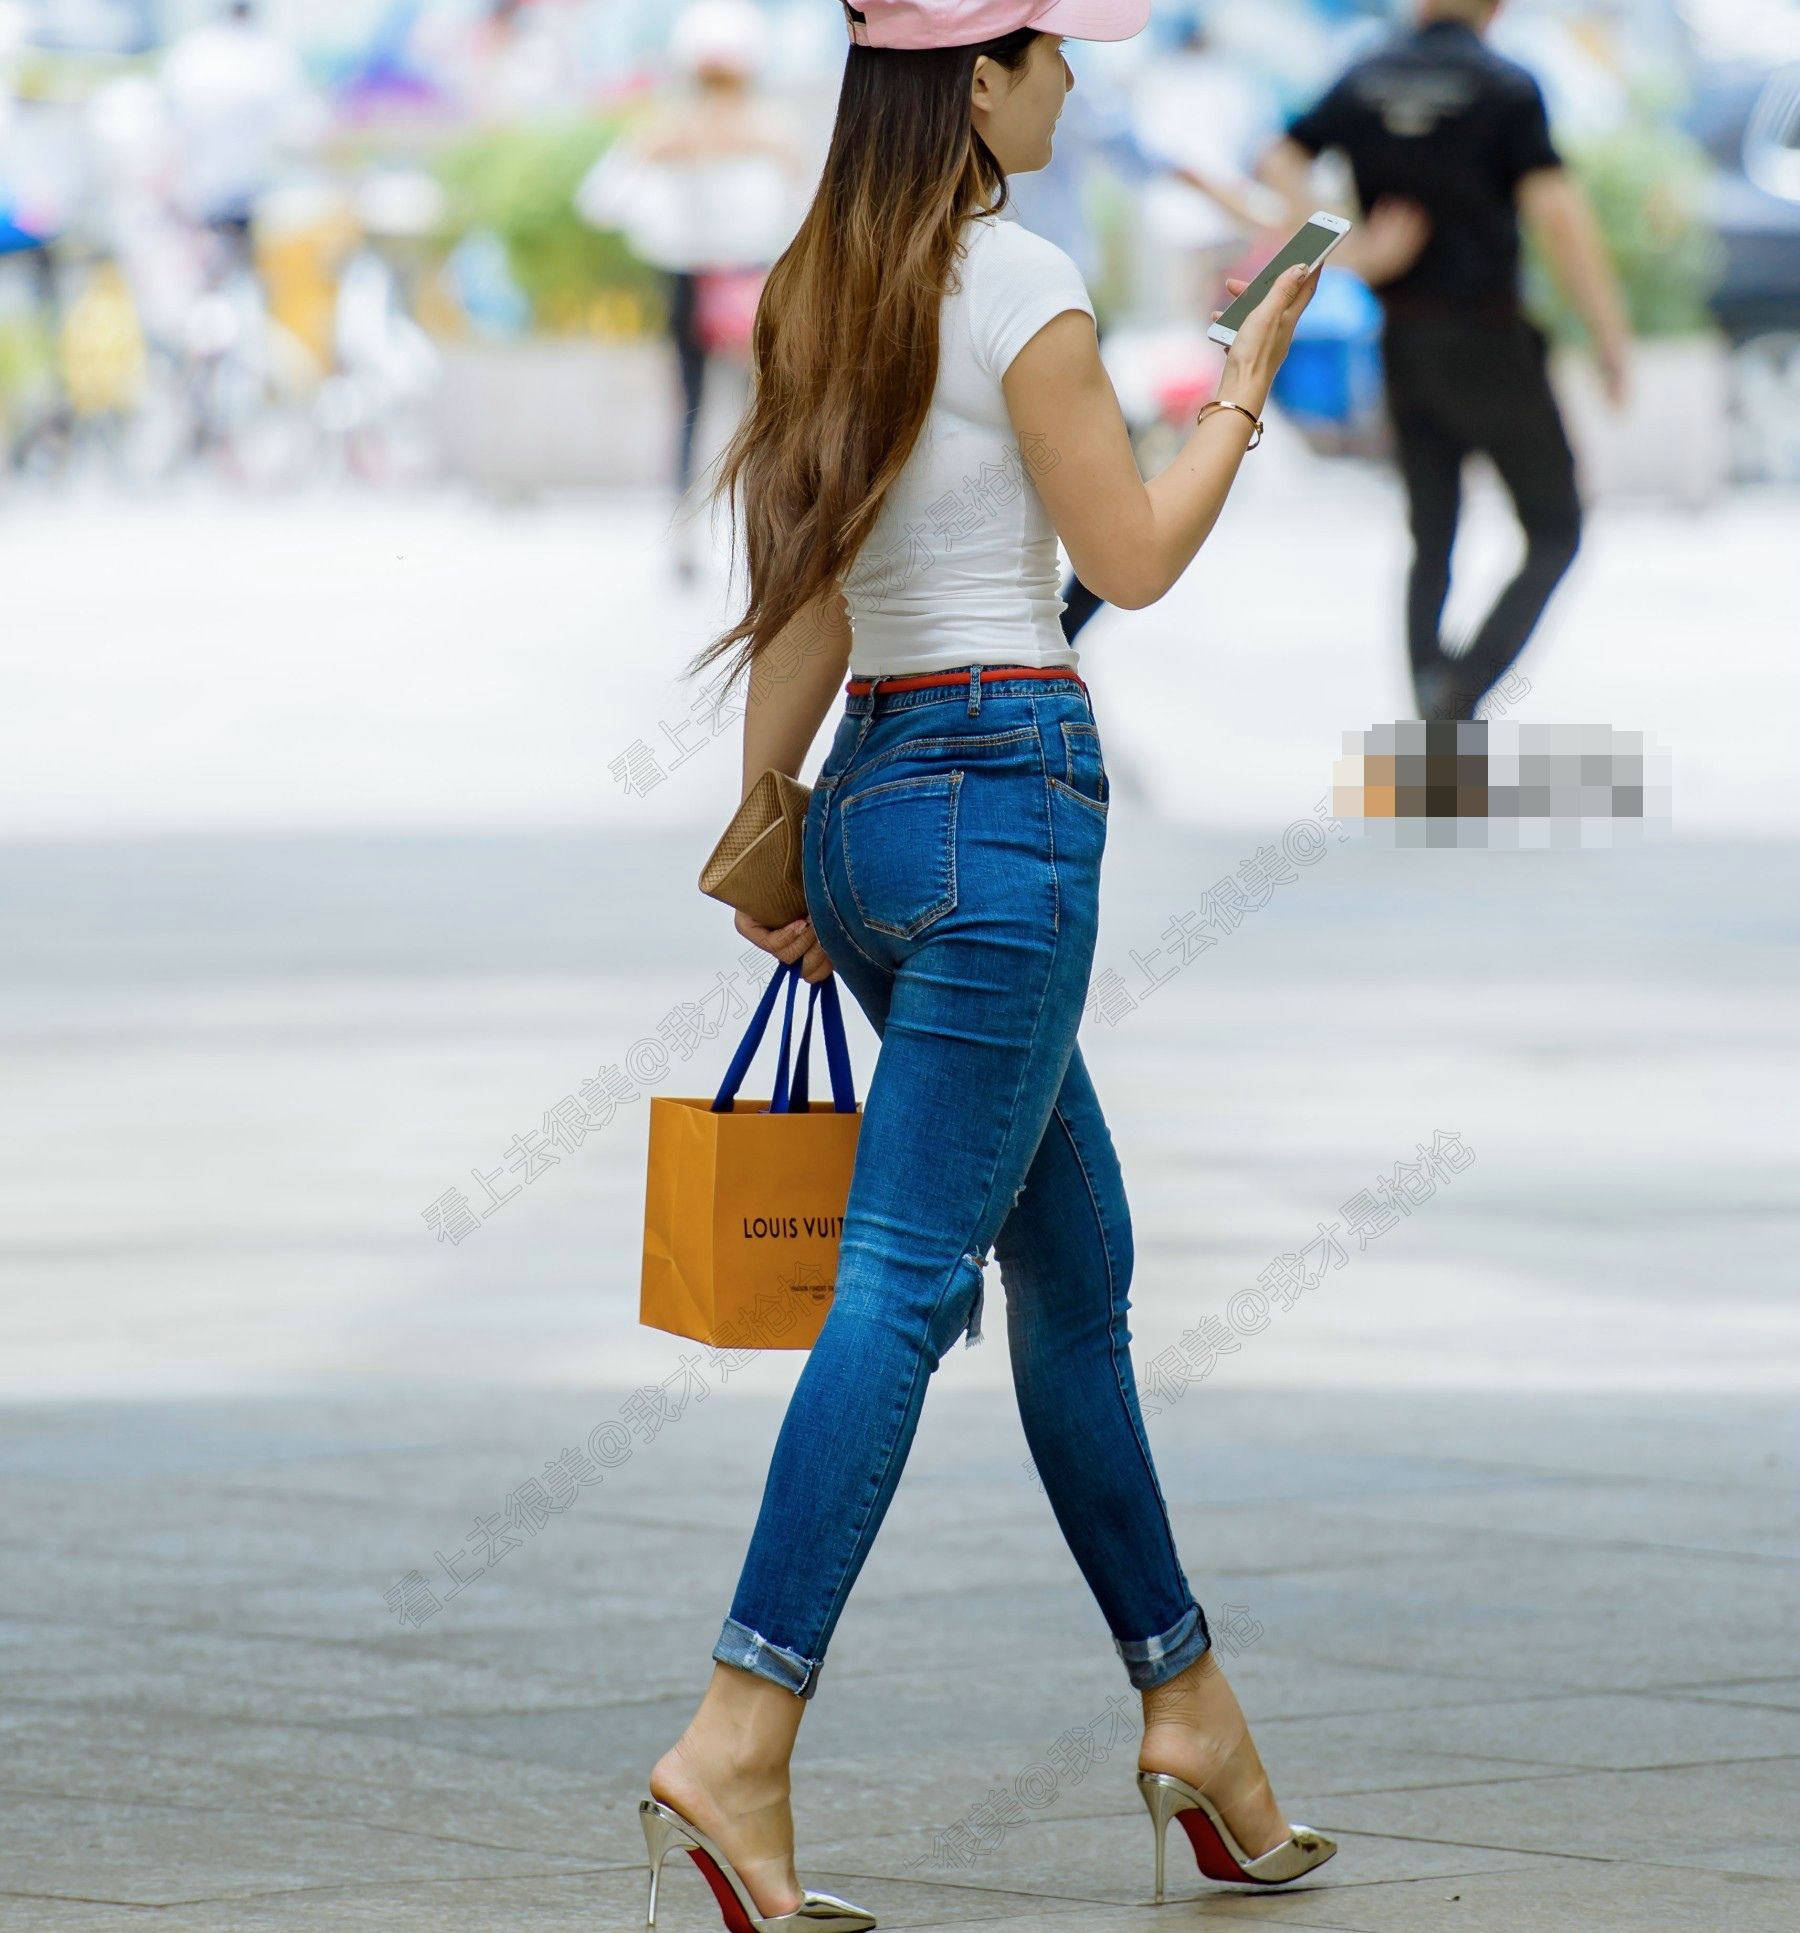 街拍: 紧身牛仔裤美女, 高跟鞋上曲线陡峭, 背影